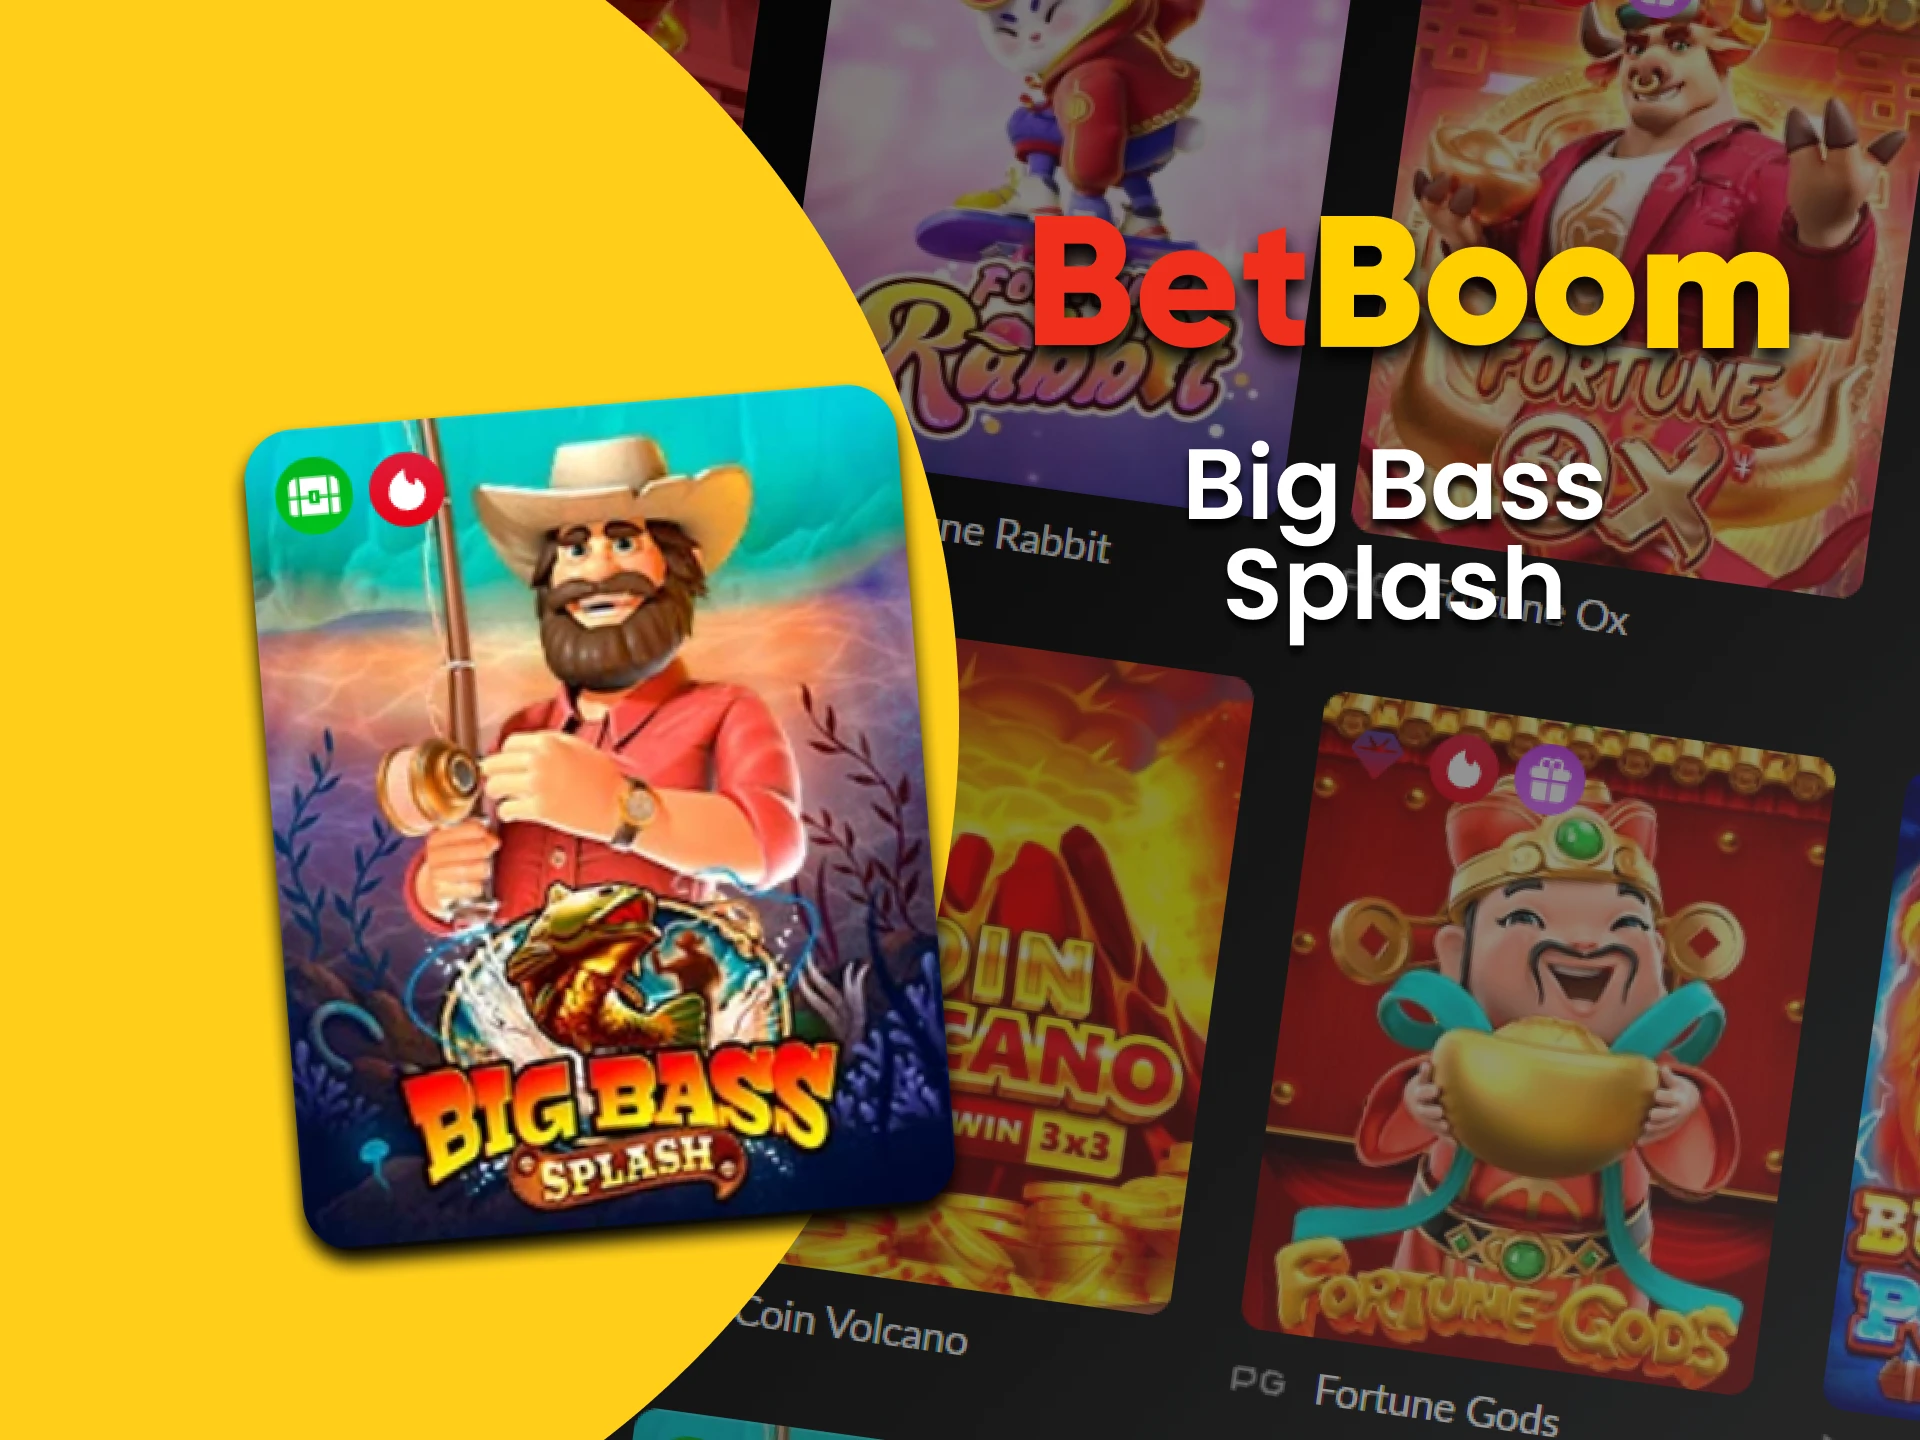 Vá para a seção de slots no BetBoom para jogar Big Bass Splash.